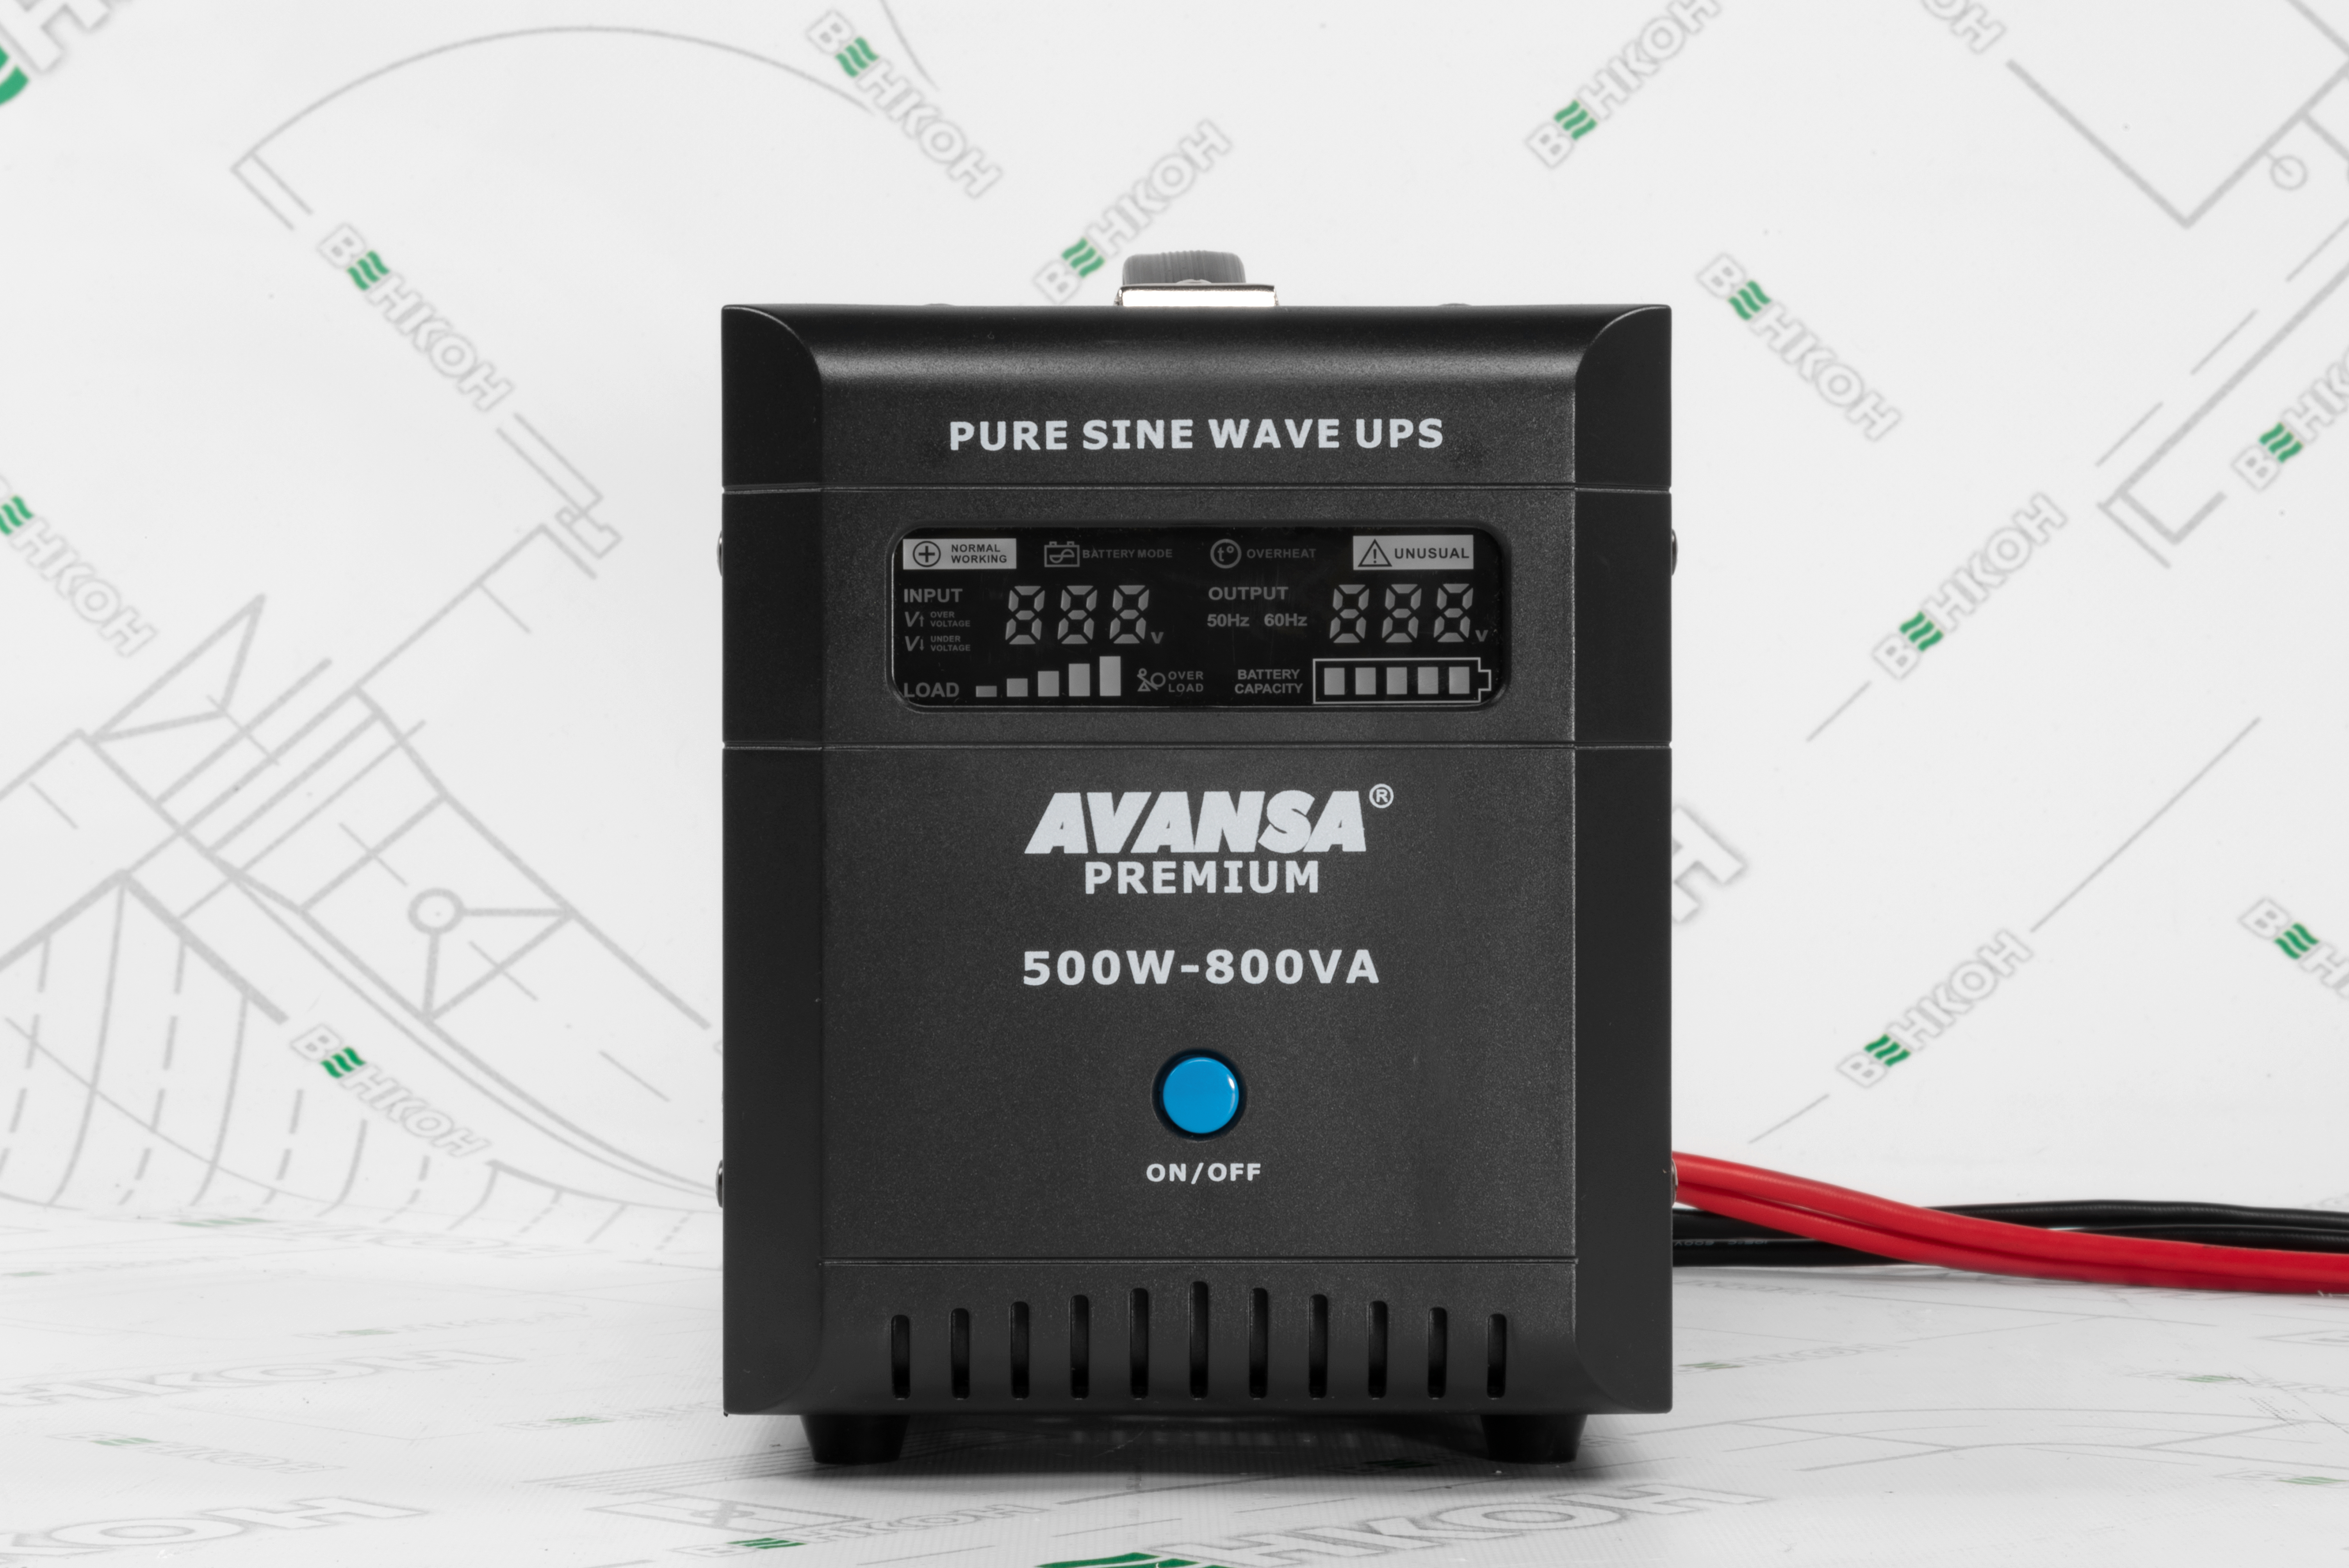 продаємо Avansa Premium 500W-800VA-12VDC в Україні - фото 4